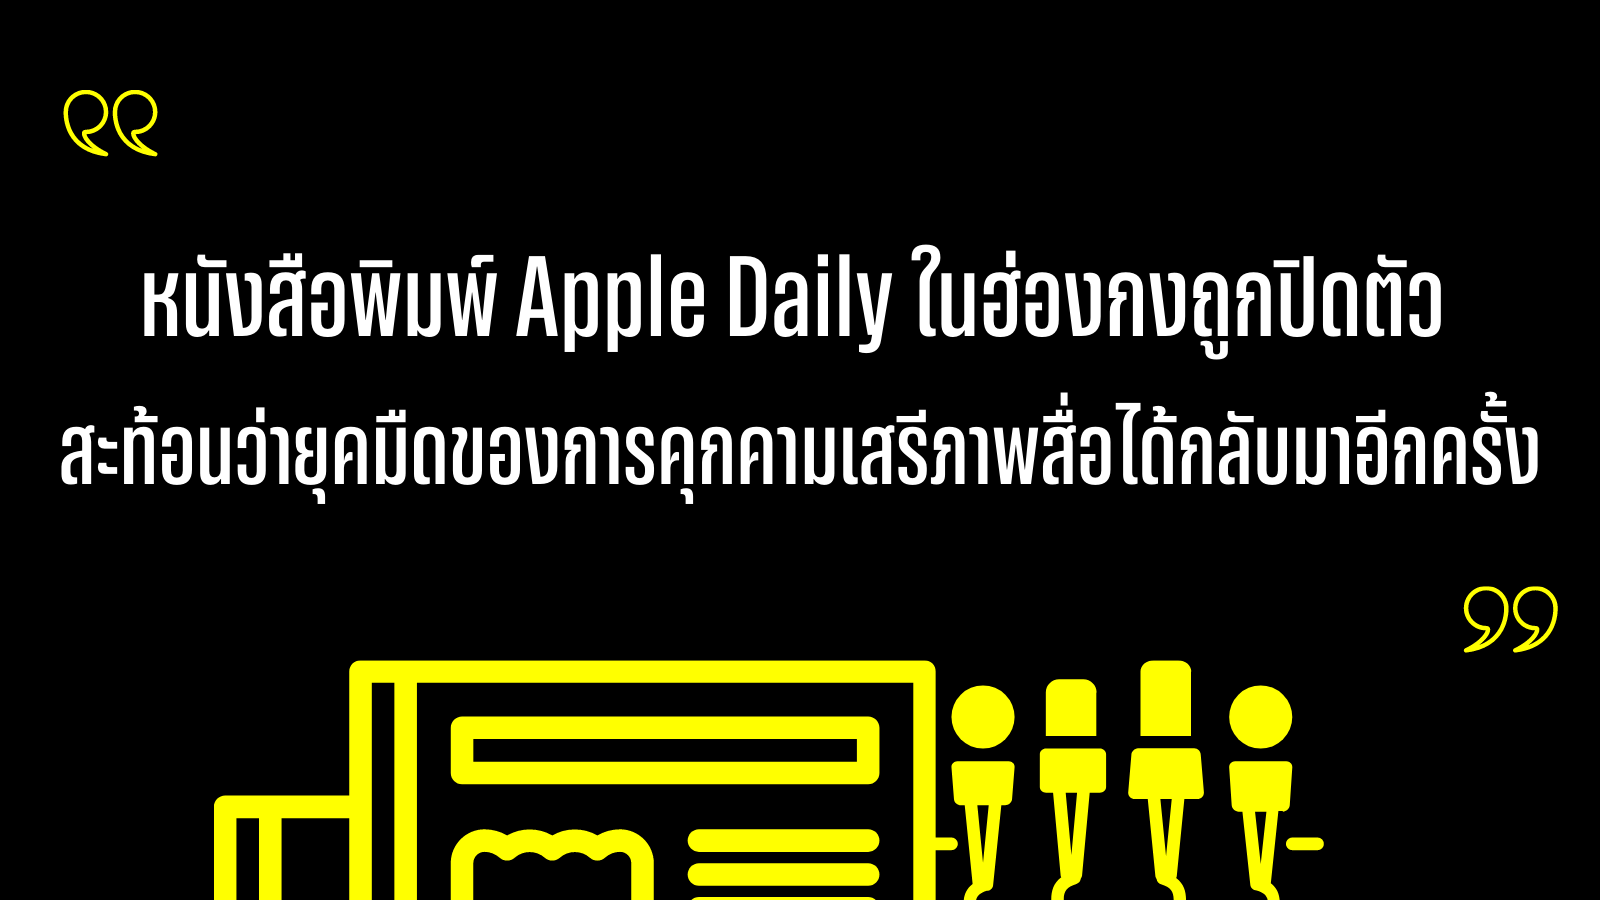 แอมเนสตี้ชี้การปิดหนังสือพิมพ์ Apple Daily ถือเป็นยุคมืดของการคุกคามสื่อในฮ่องกงอีกครั้ง